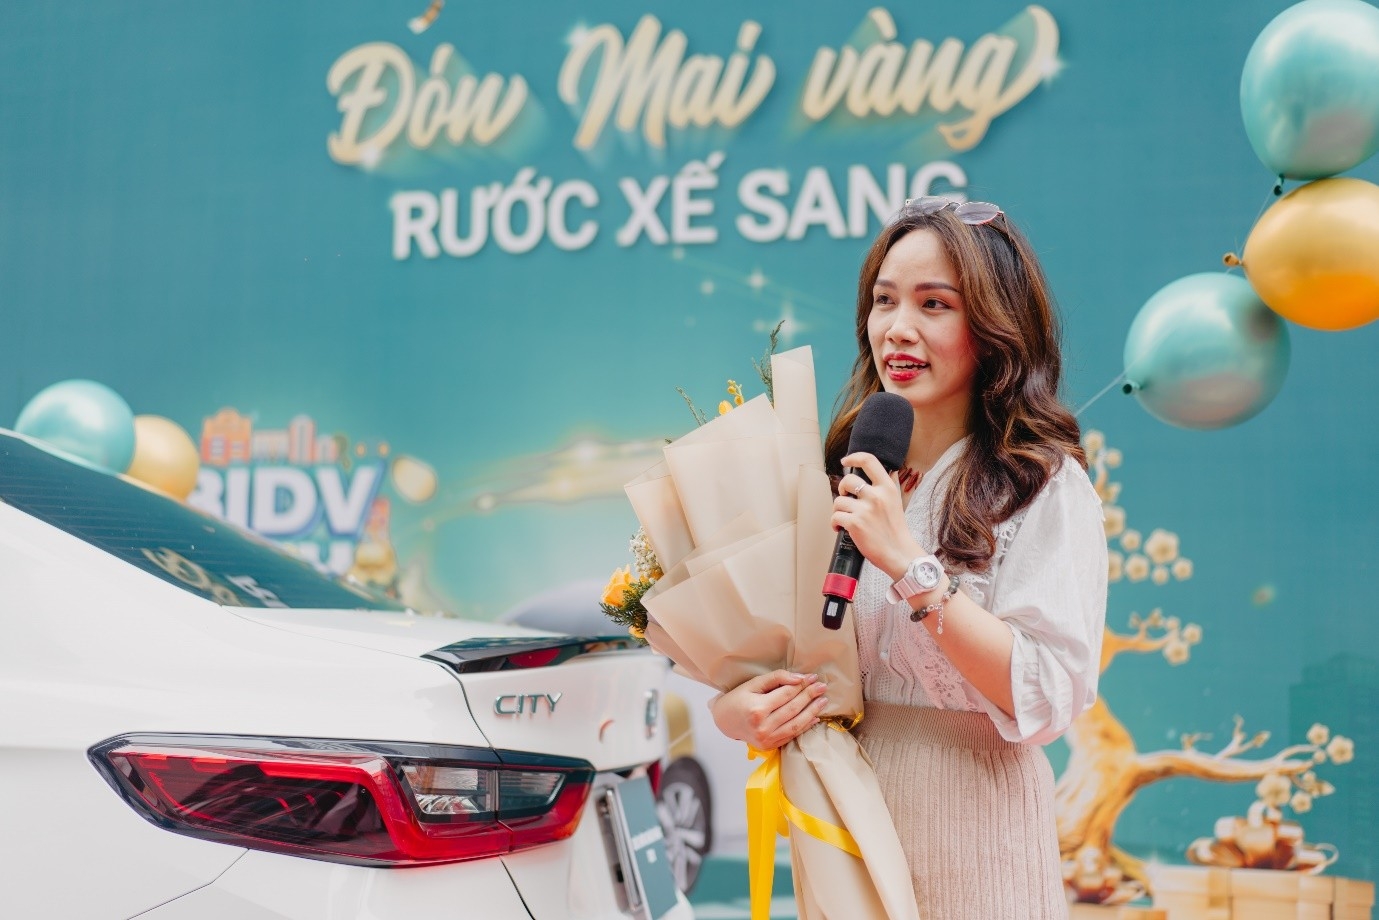 BIDV trao giải thưởng ô tô Honda City cho khách hàng